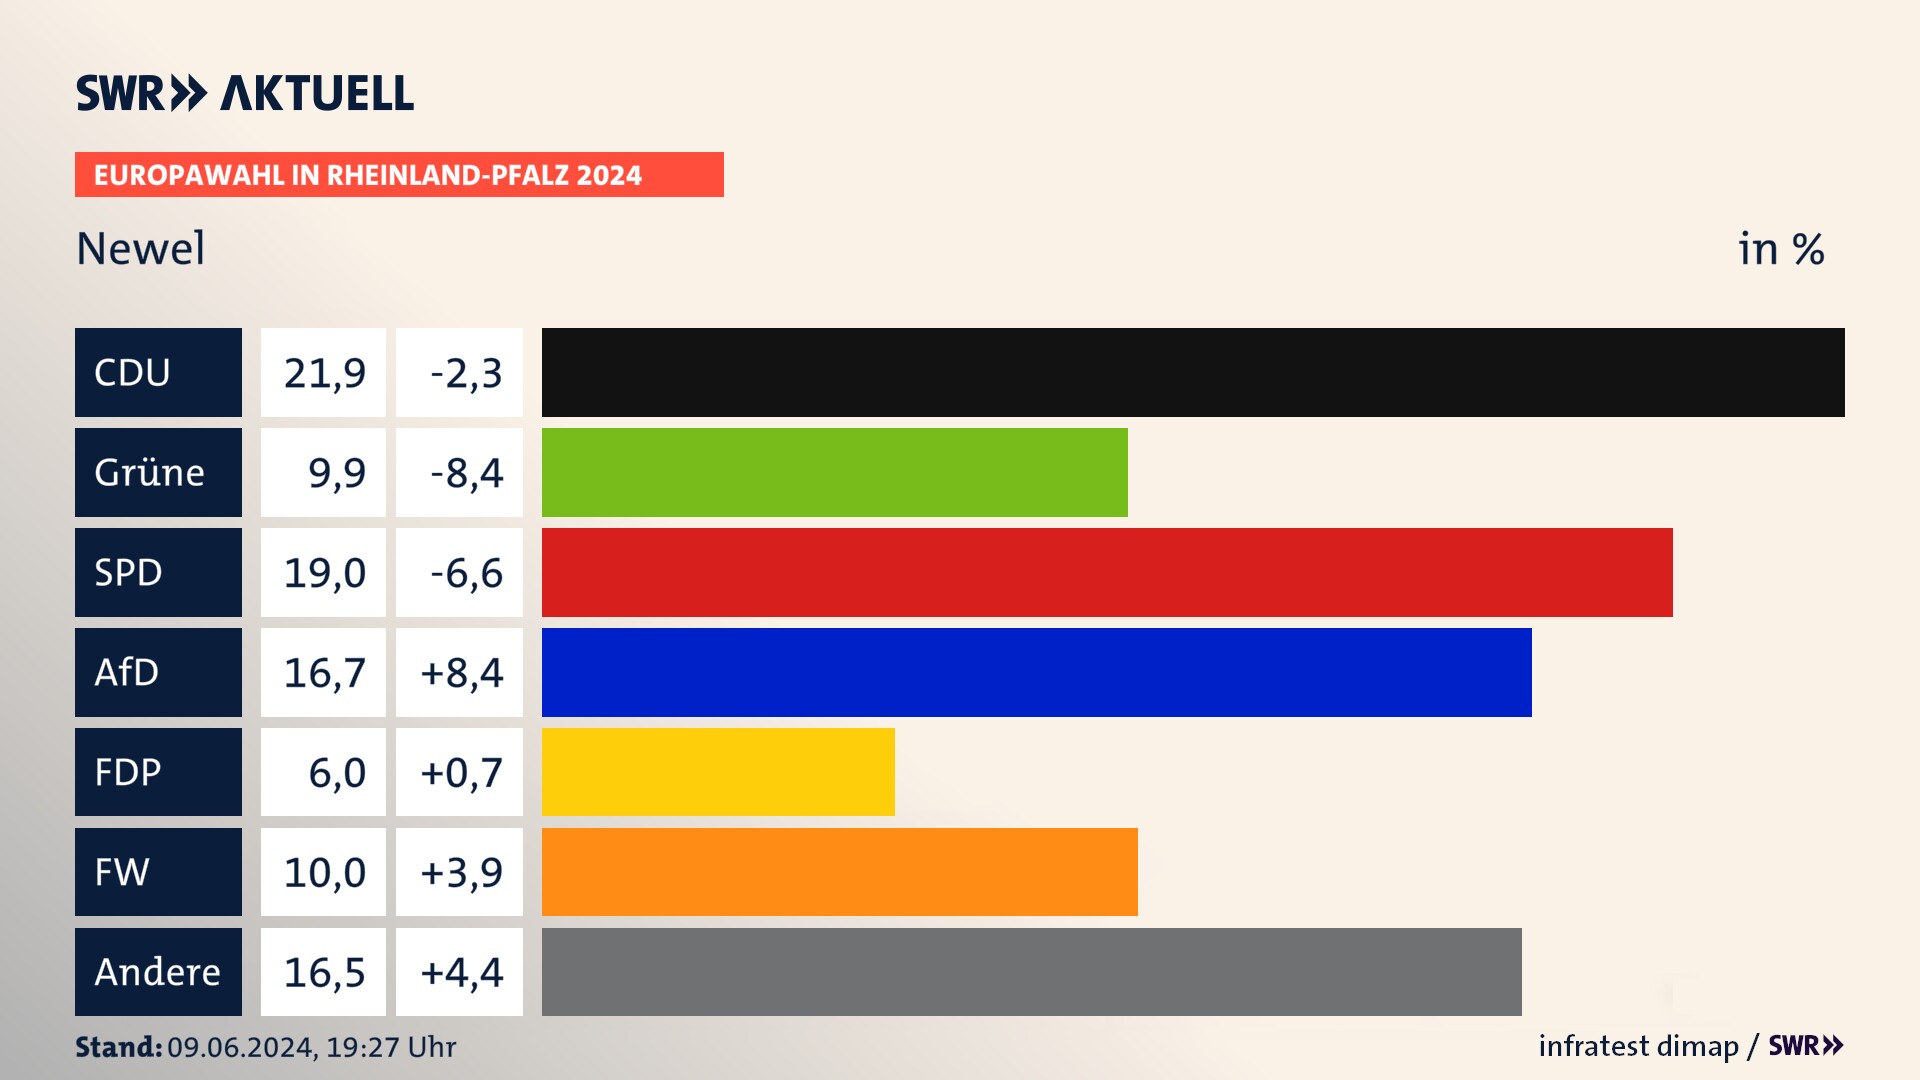 Europawahl 2024 Endergebnis Zweitstimme für Newel. In Newel erzielt die CDU 21,9 Prozent der gültigen  Stimmen. Die Grünen landen bei 9,9 Prozent. Die SPD erreicht 19,0 Prozent. Die AfD kommt auf 16,7 Prozent. Die FDP landet bei 6,0 Prozent. Die Freien Wähler erreichen 10,0 Prozent.